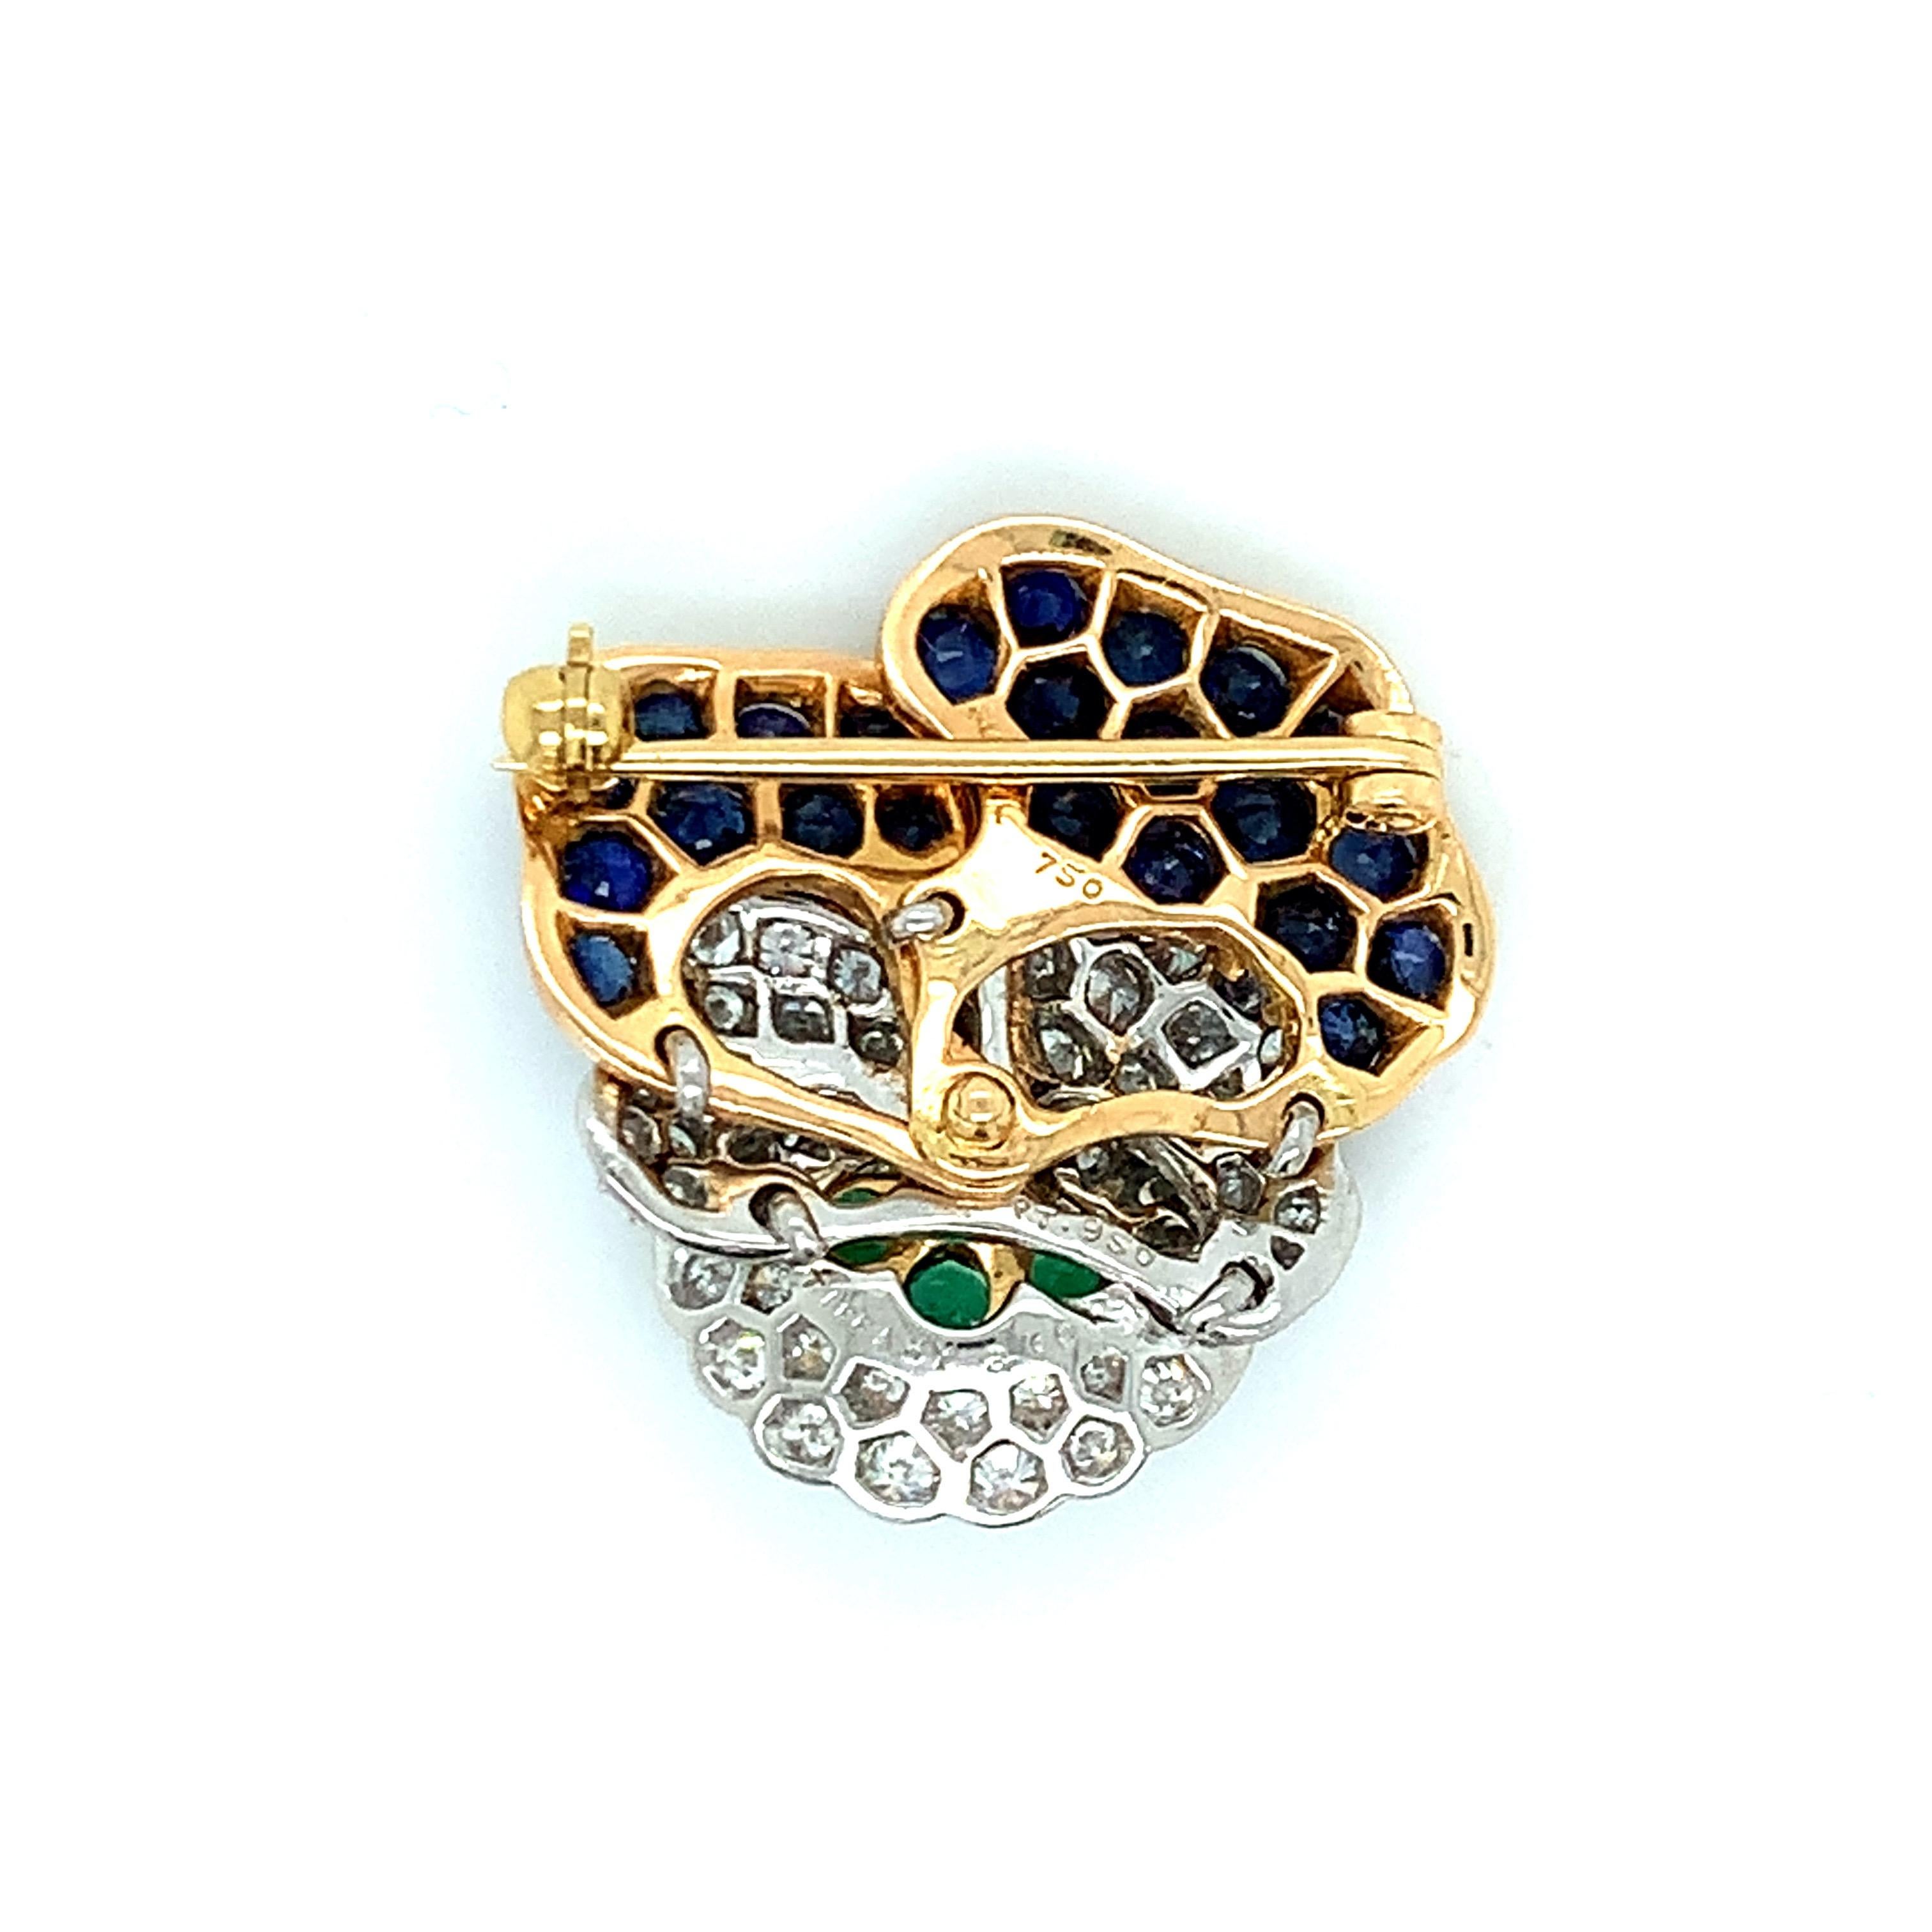 Ikonische Stiefmütterchen-Brosche von Tiffany & Co, gefasst in 18 Karat Gold und Platin, mit Smaragden, blauen Saphiren und ca. 1,00ctw G/VS-Diamanten. Die Brosche misst 1